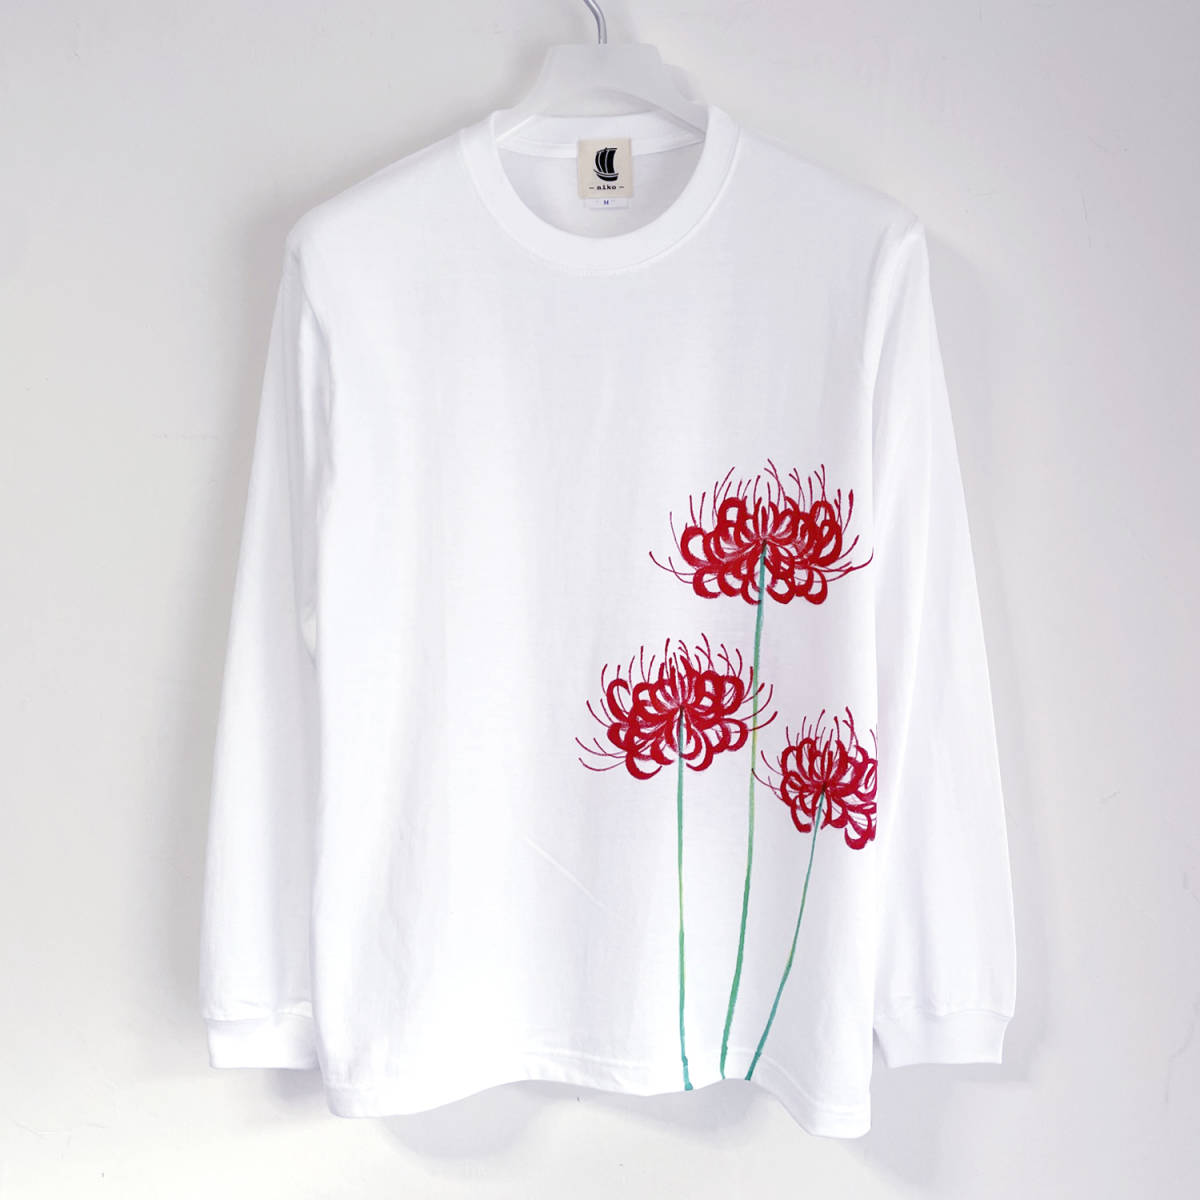 Higan T-Shirt mit Blumenmuster, weiße S-Größe, handbemaltes Langarm-T-Shirt mit gerippten Ärmeln, langes T-Shirt, Blumenmuster, Japanisches Muster, Weiß, T-Shirt, lange Ärmel, S-Größe